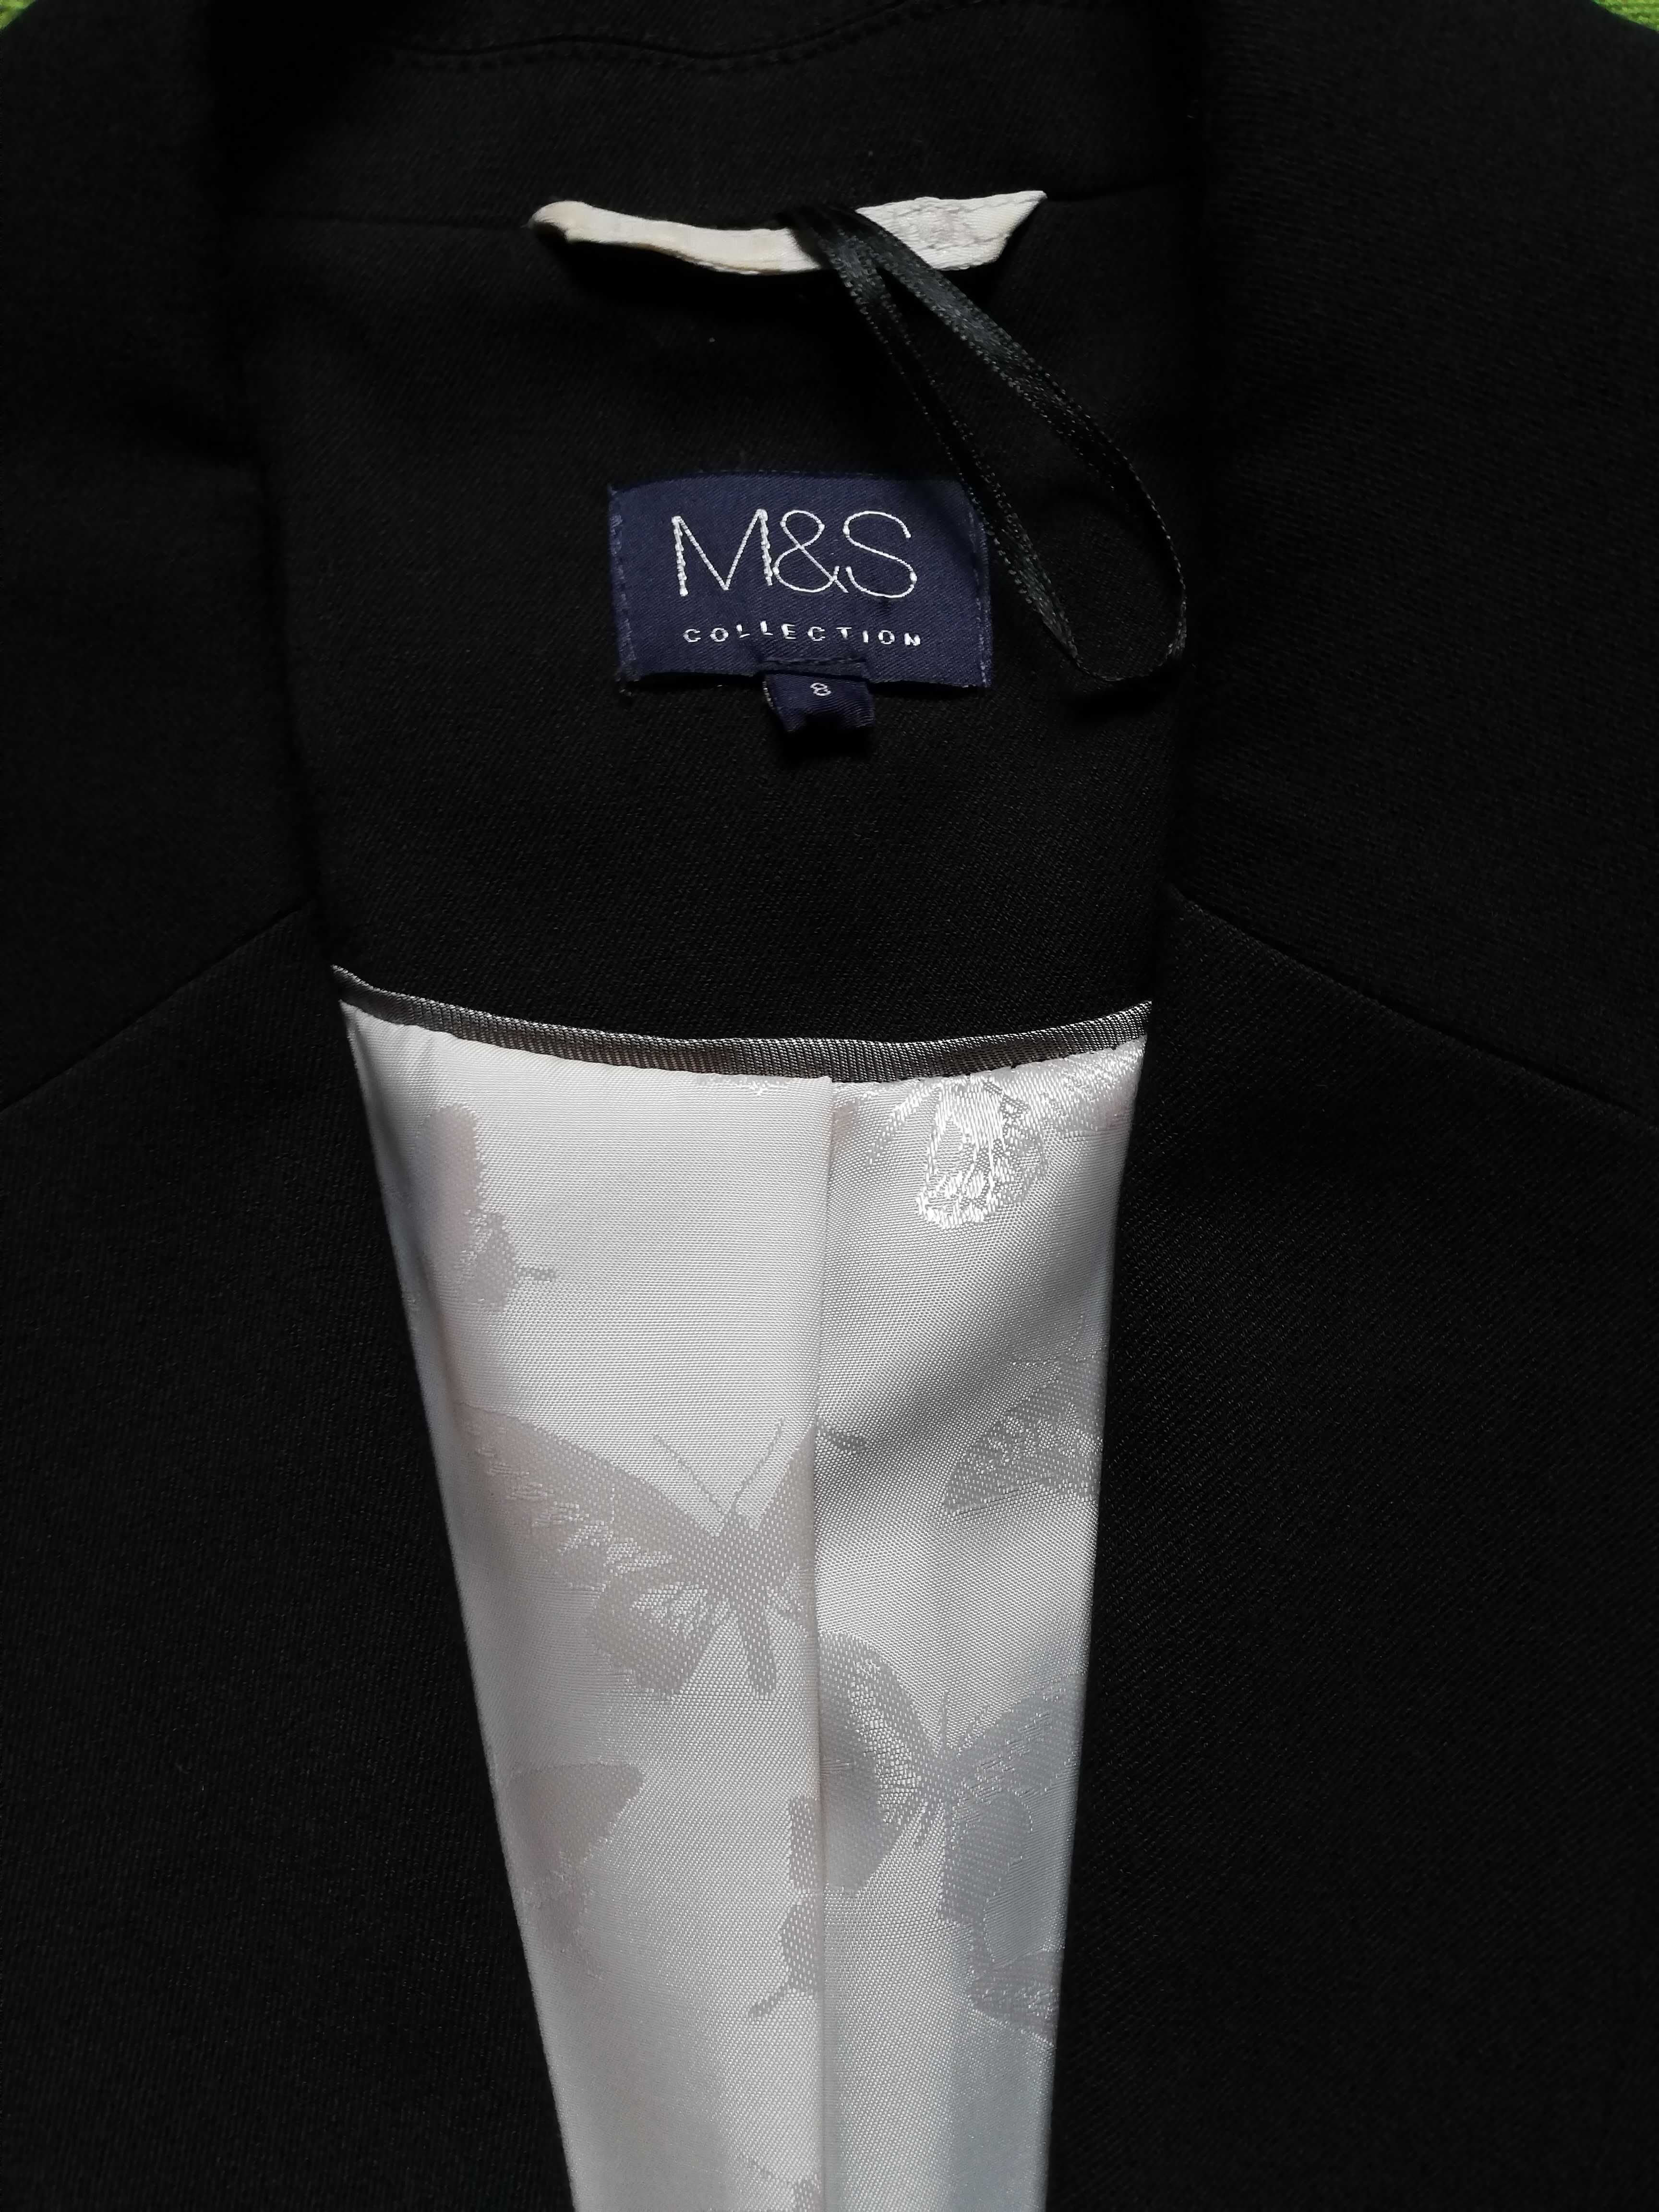 Elegancka marynarka M&S 36 S taliowana żakiet czarny Marks & Spencer